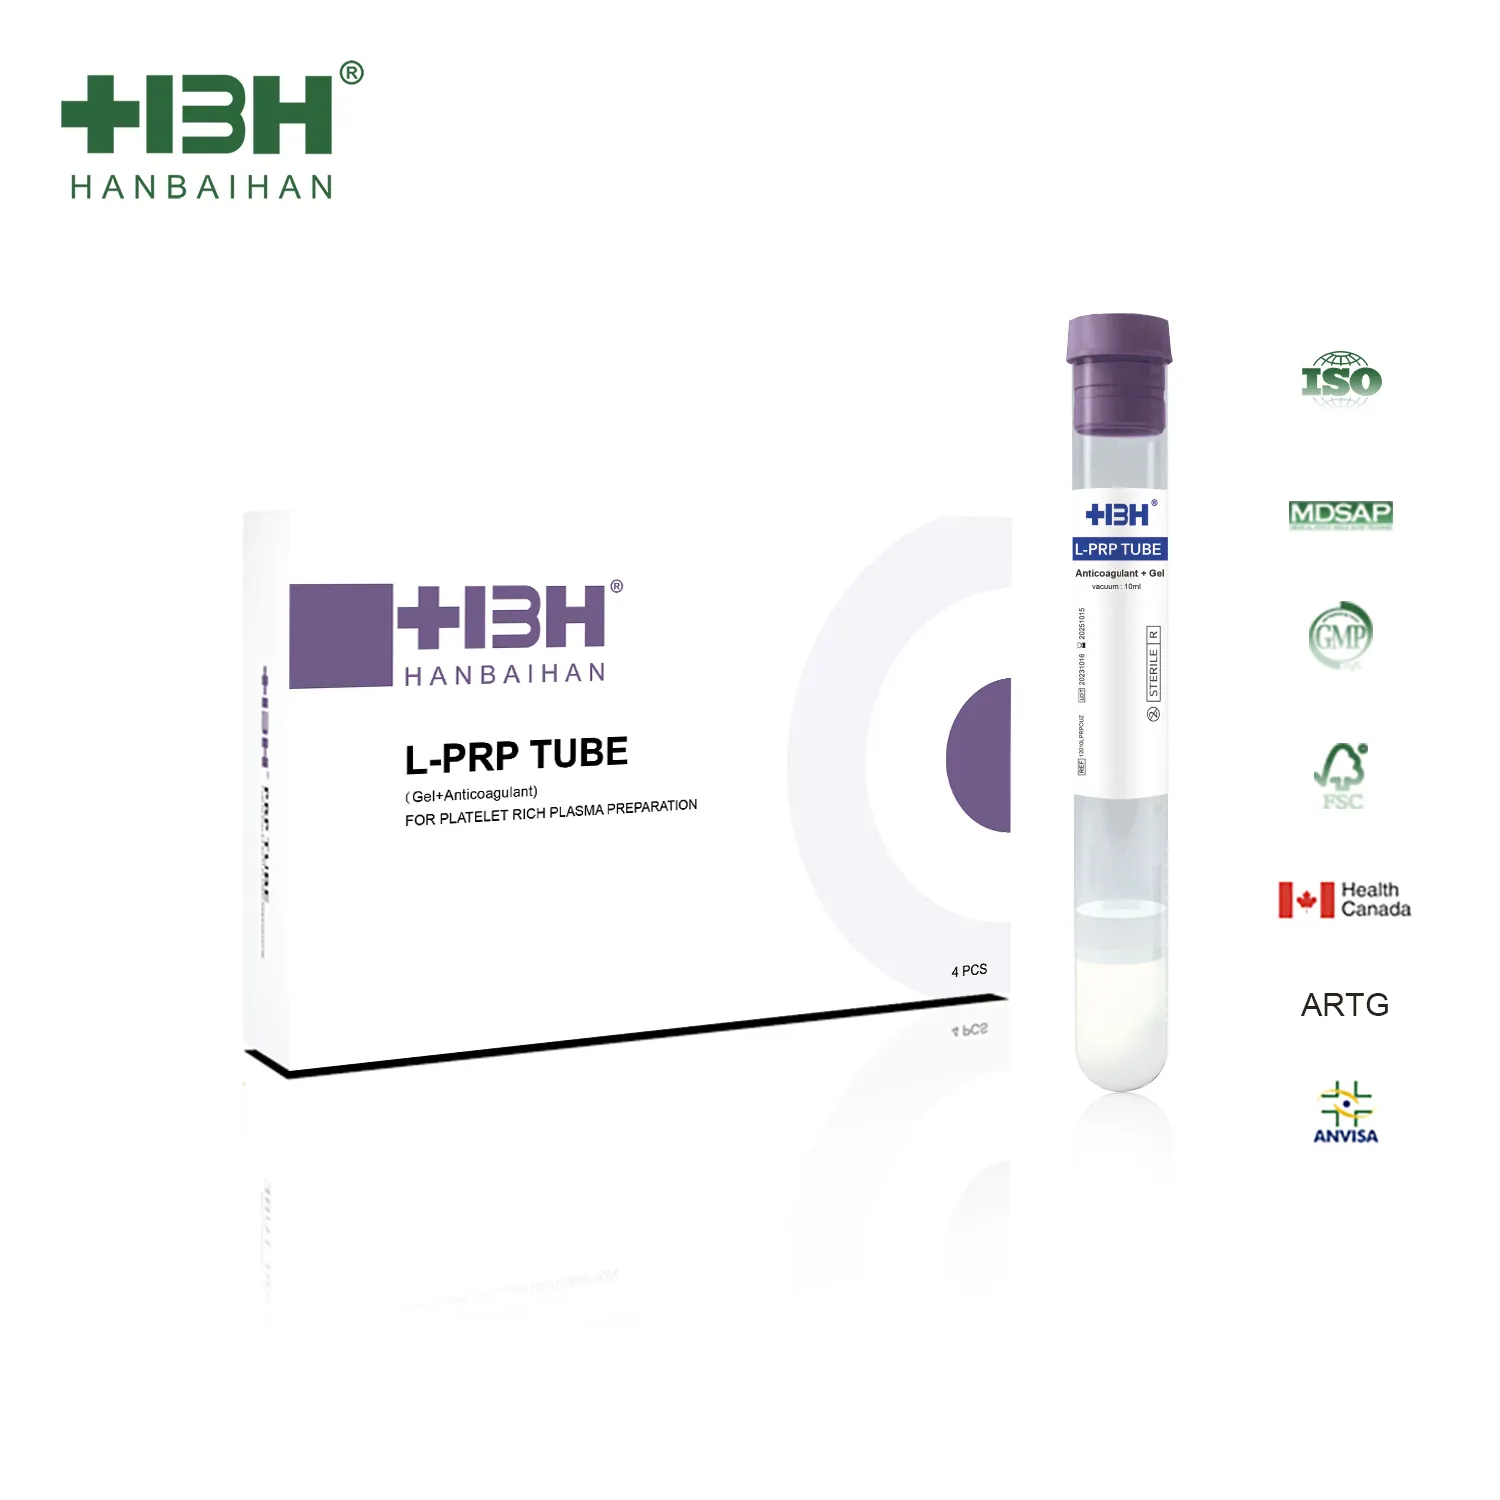 Abd ve CA sertifikalı saç dökülmesi tedavisi için ACD jel sodyum sitrat ile HBH PRP tüp